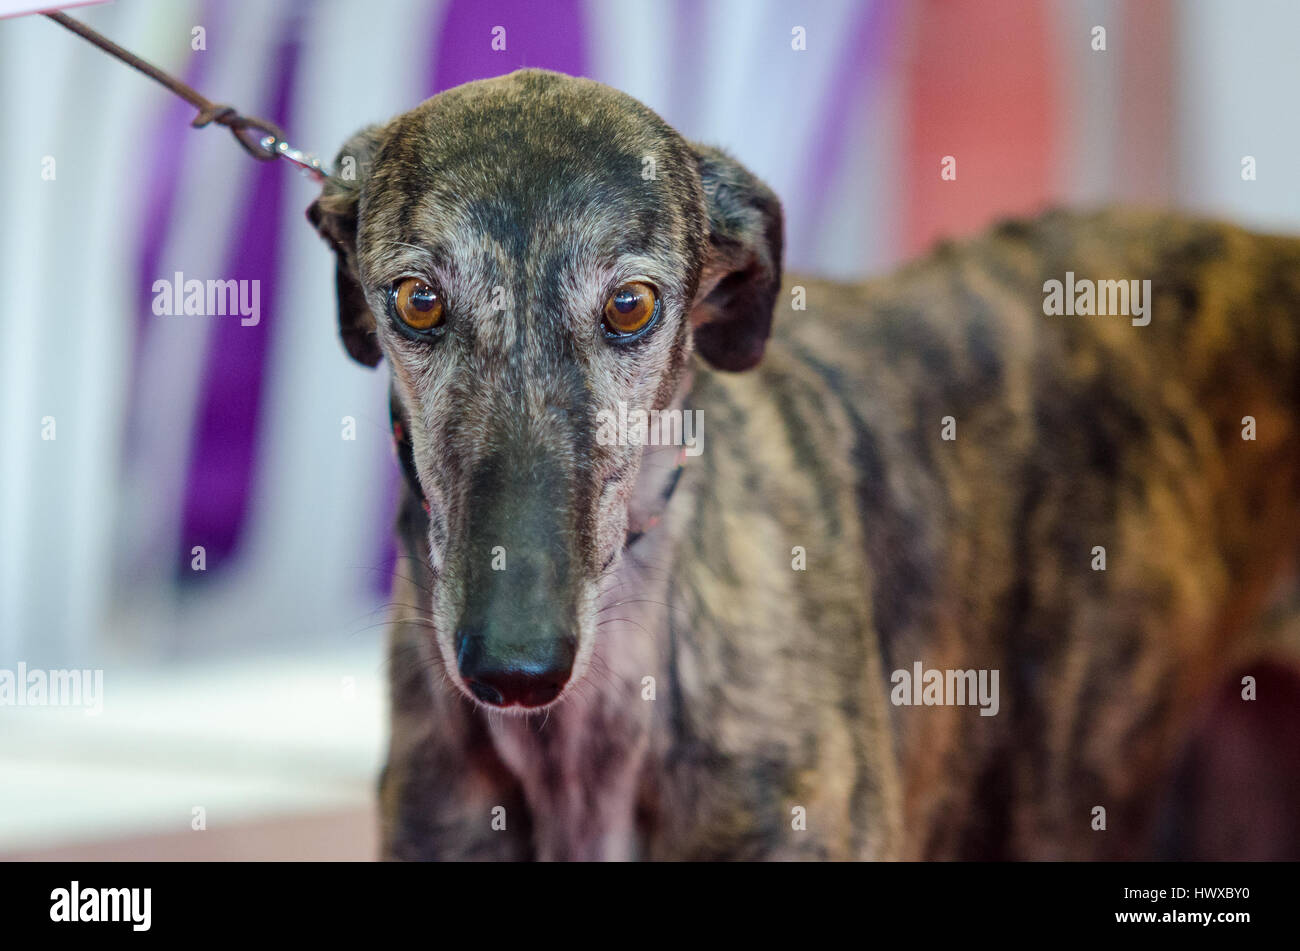 Portrait of a sad dog Greyhound Stock Photo